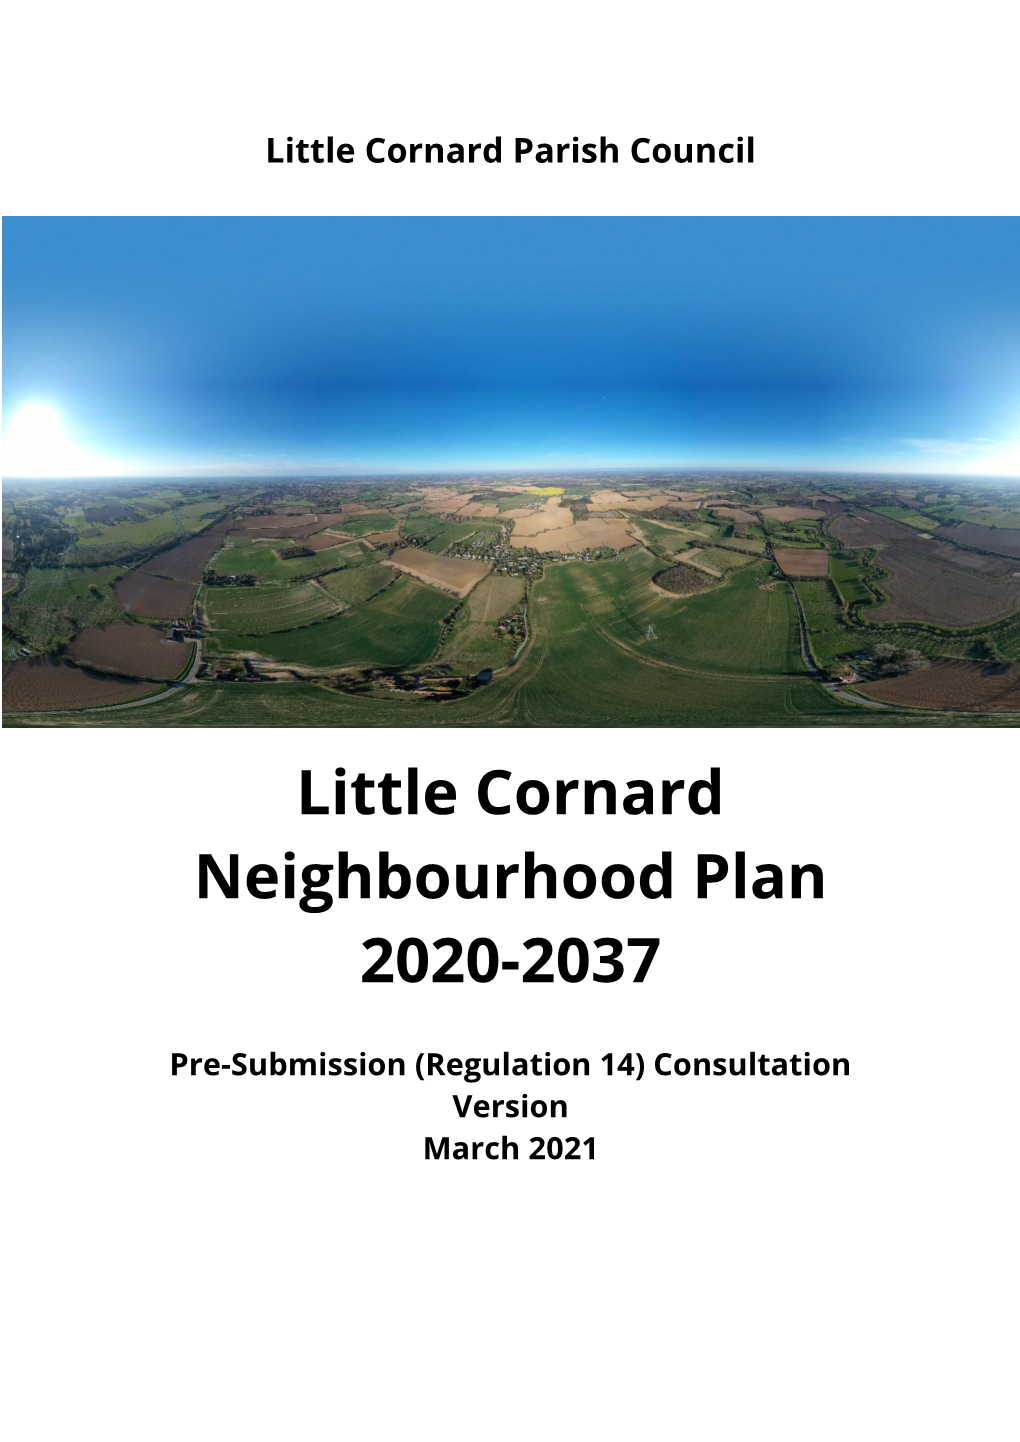 Draft Little Cornard Neighbourhood Plan Regulation 14